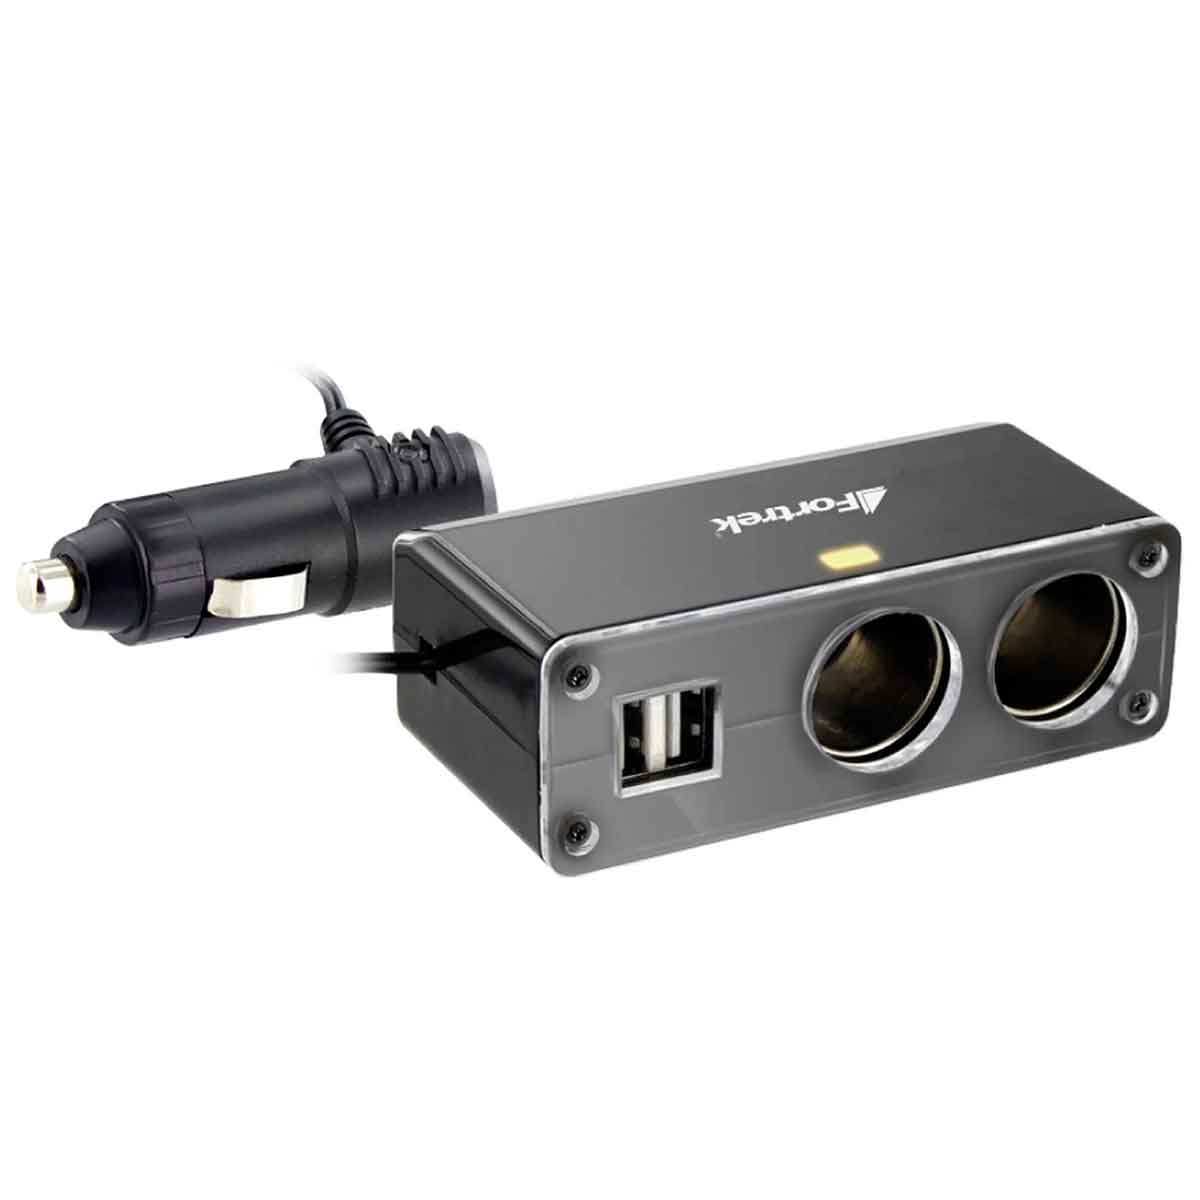 Carregador Veicular USB - com 2 saídas USB 2A + 2 portas 12/24V - Fortrek MPS-201 - Preto